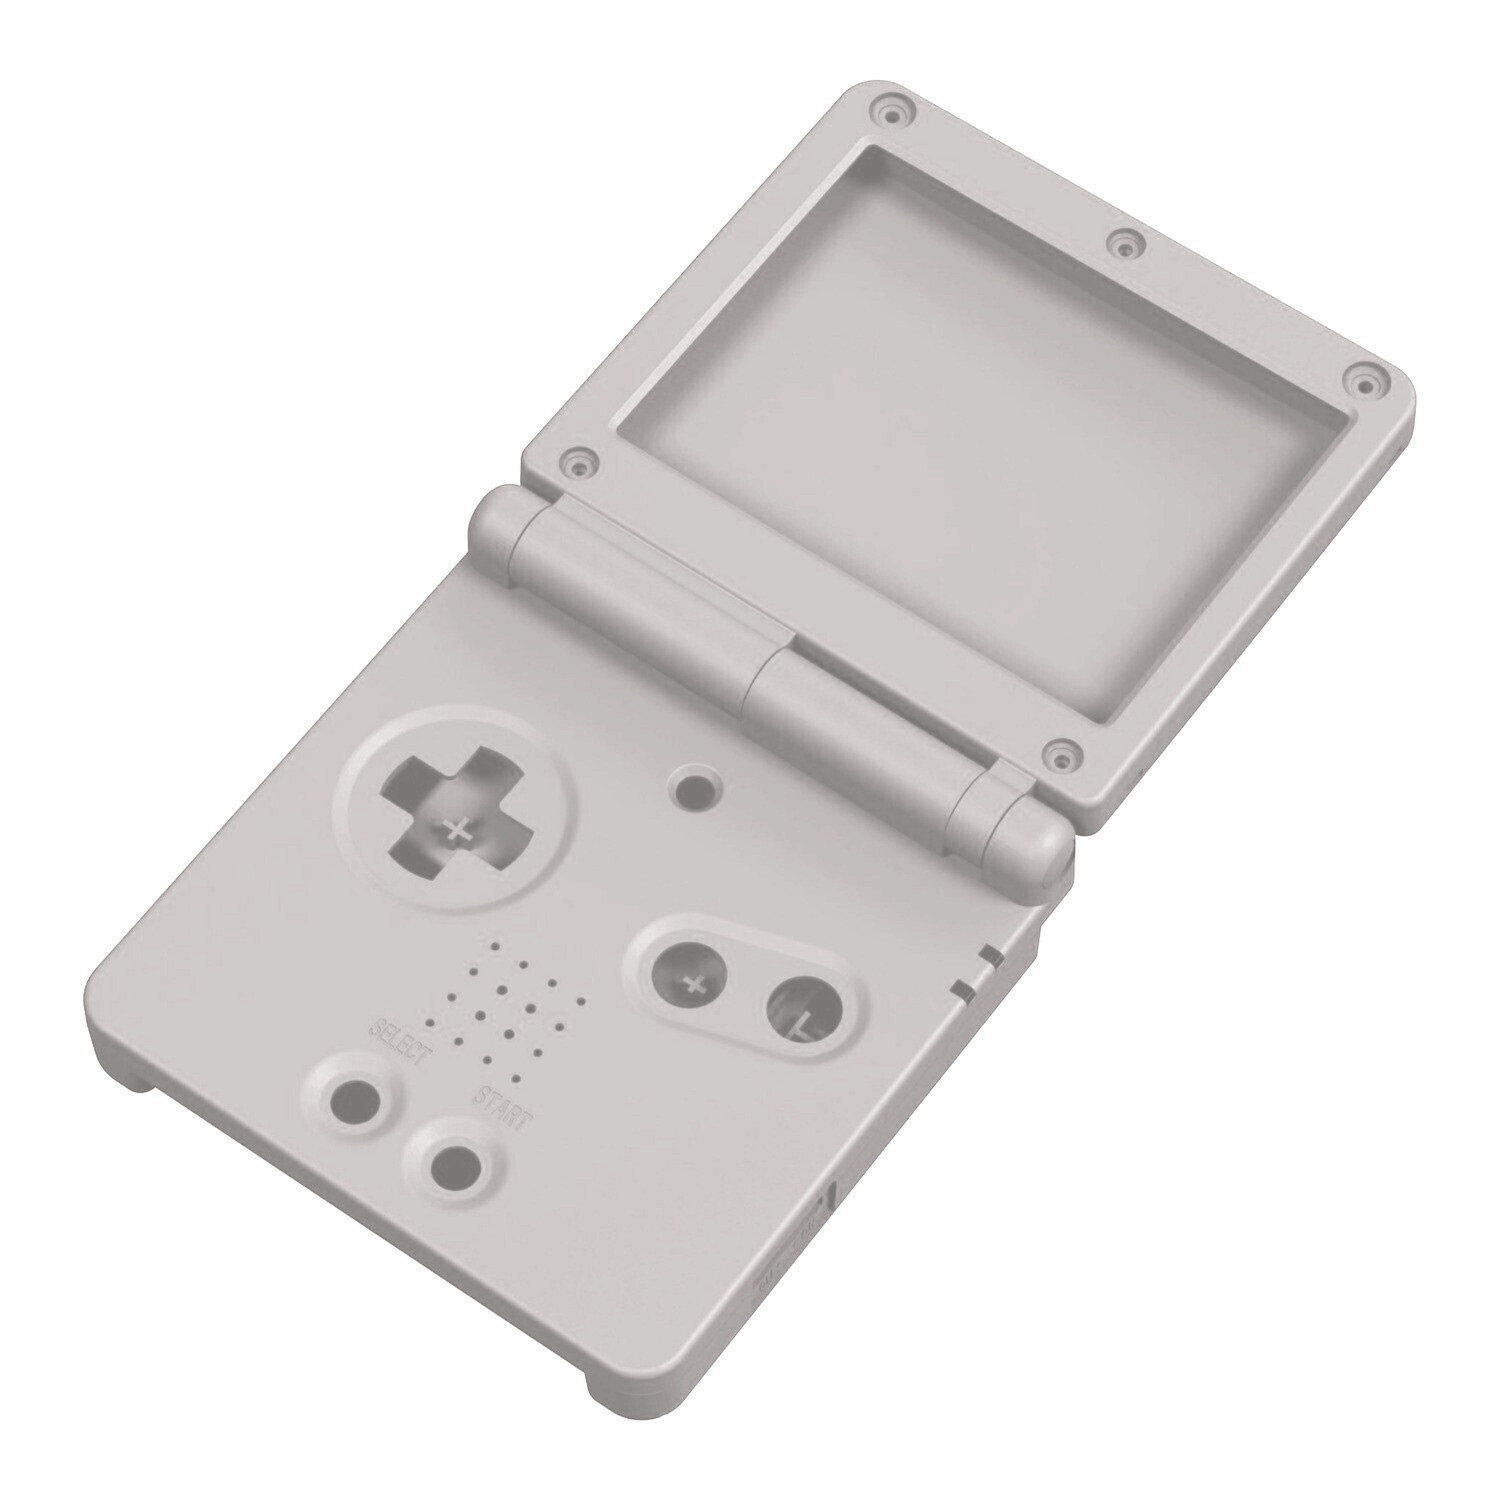 Game Boy Advance SP Etui (Grijs)